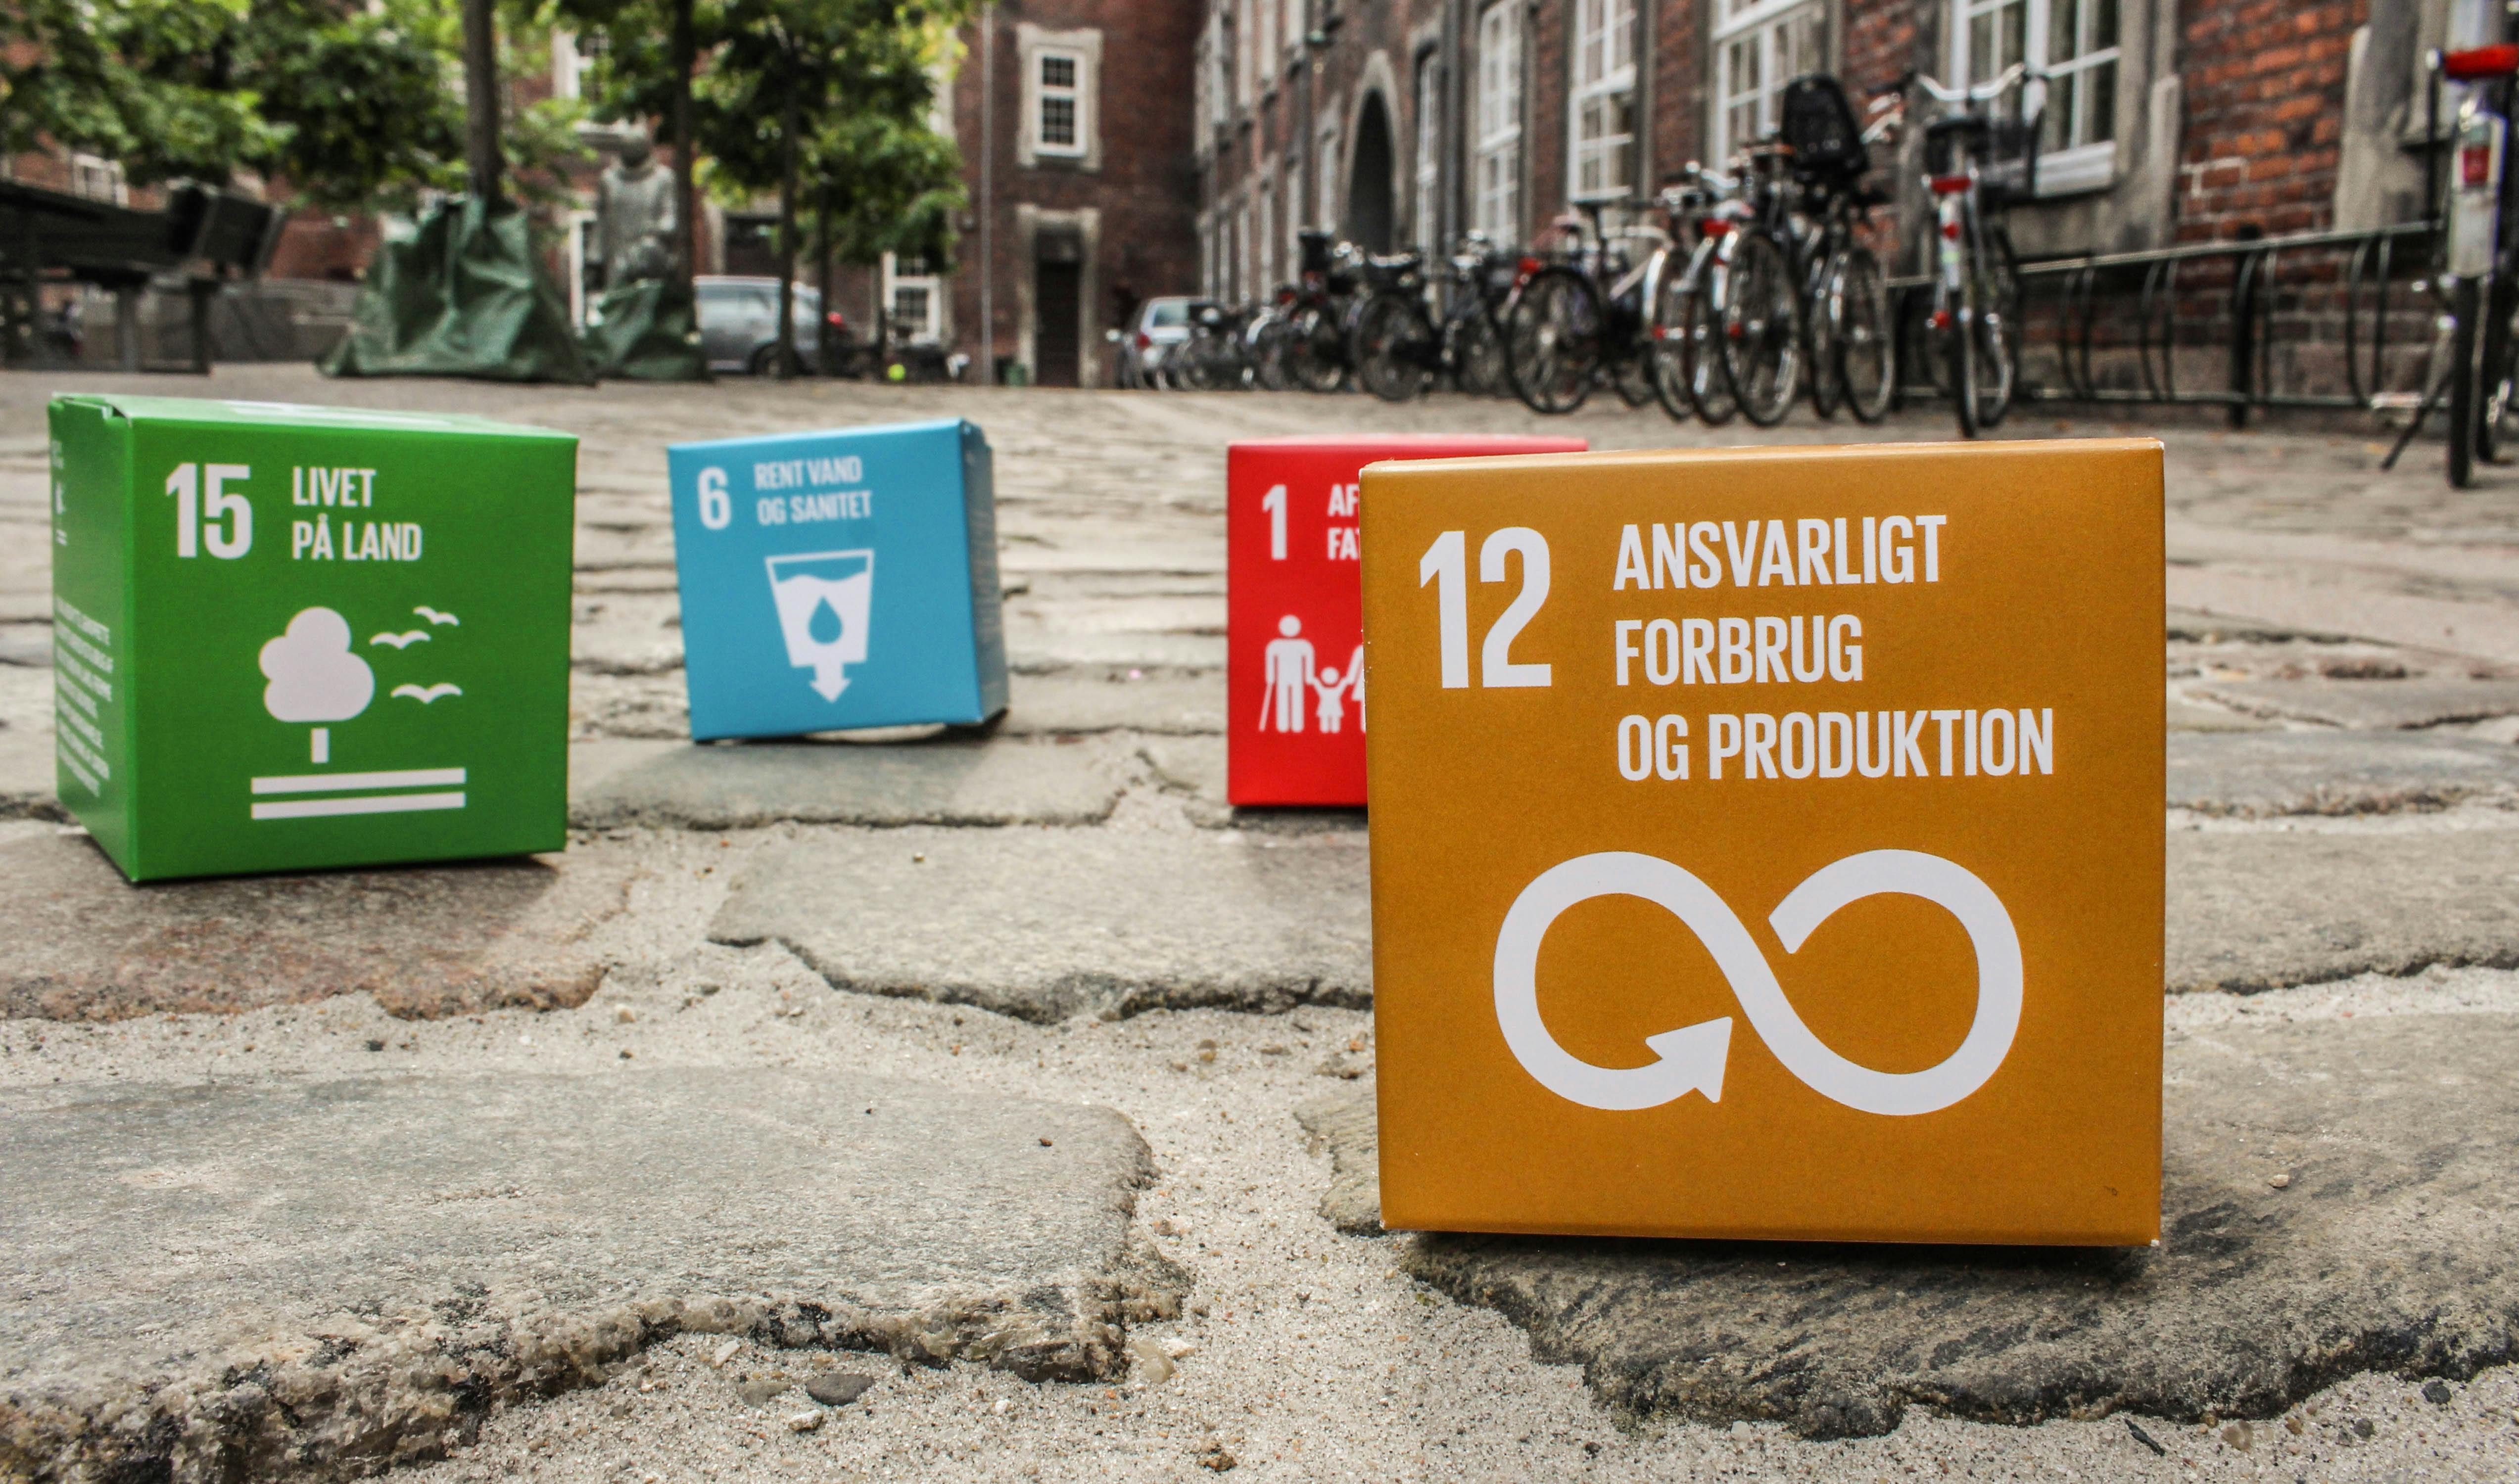 Odense Kommune har netop belønnet virksomheden Plus Pack A/S for deres arbejde med Verdensmål 12. Foto: Lauge Eilsøe-Madsen